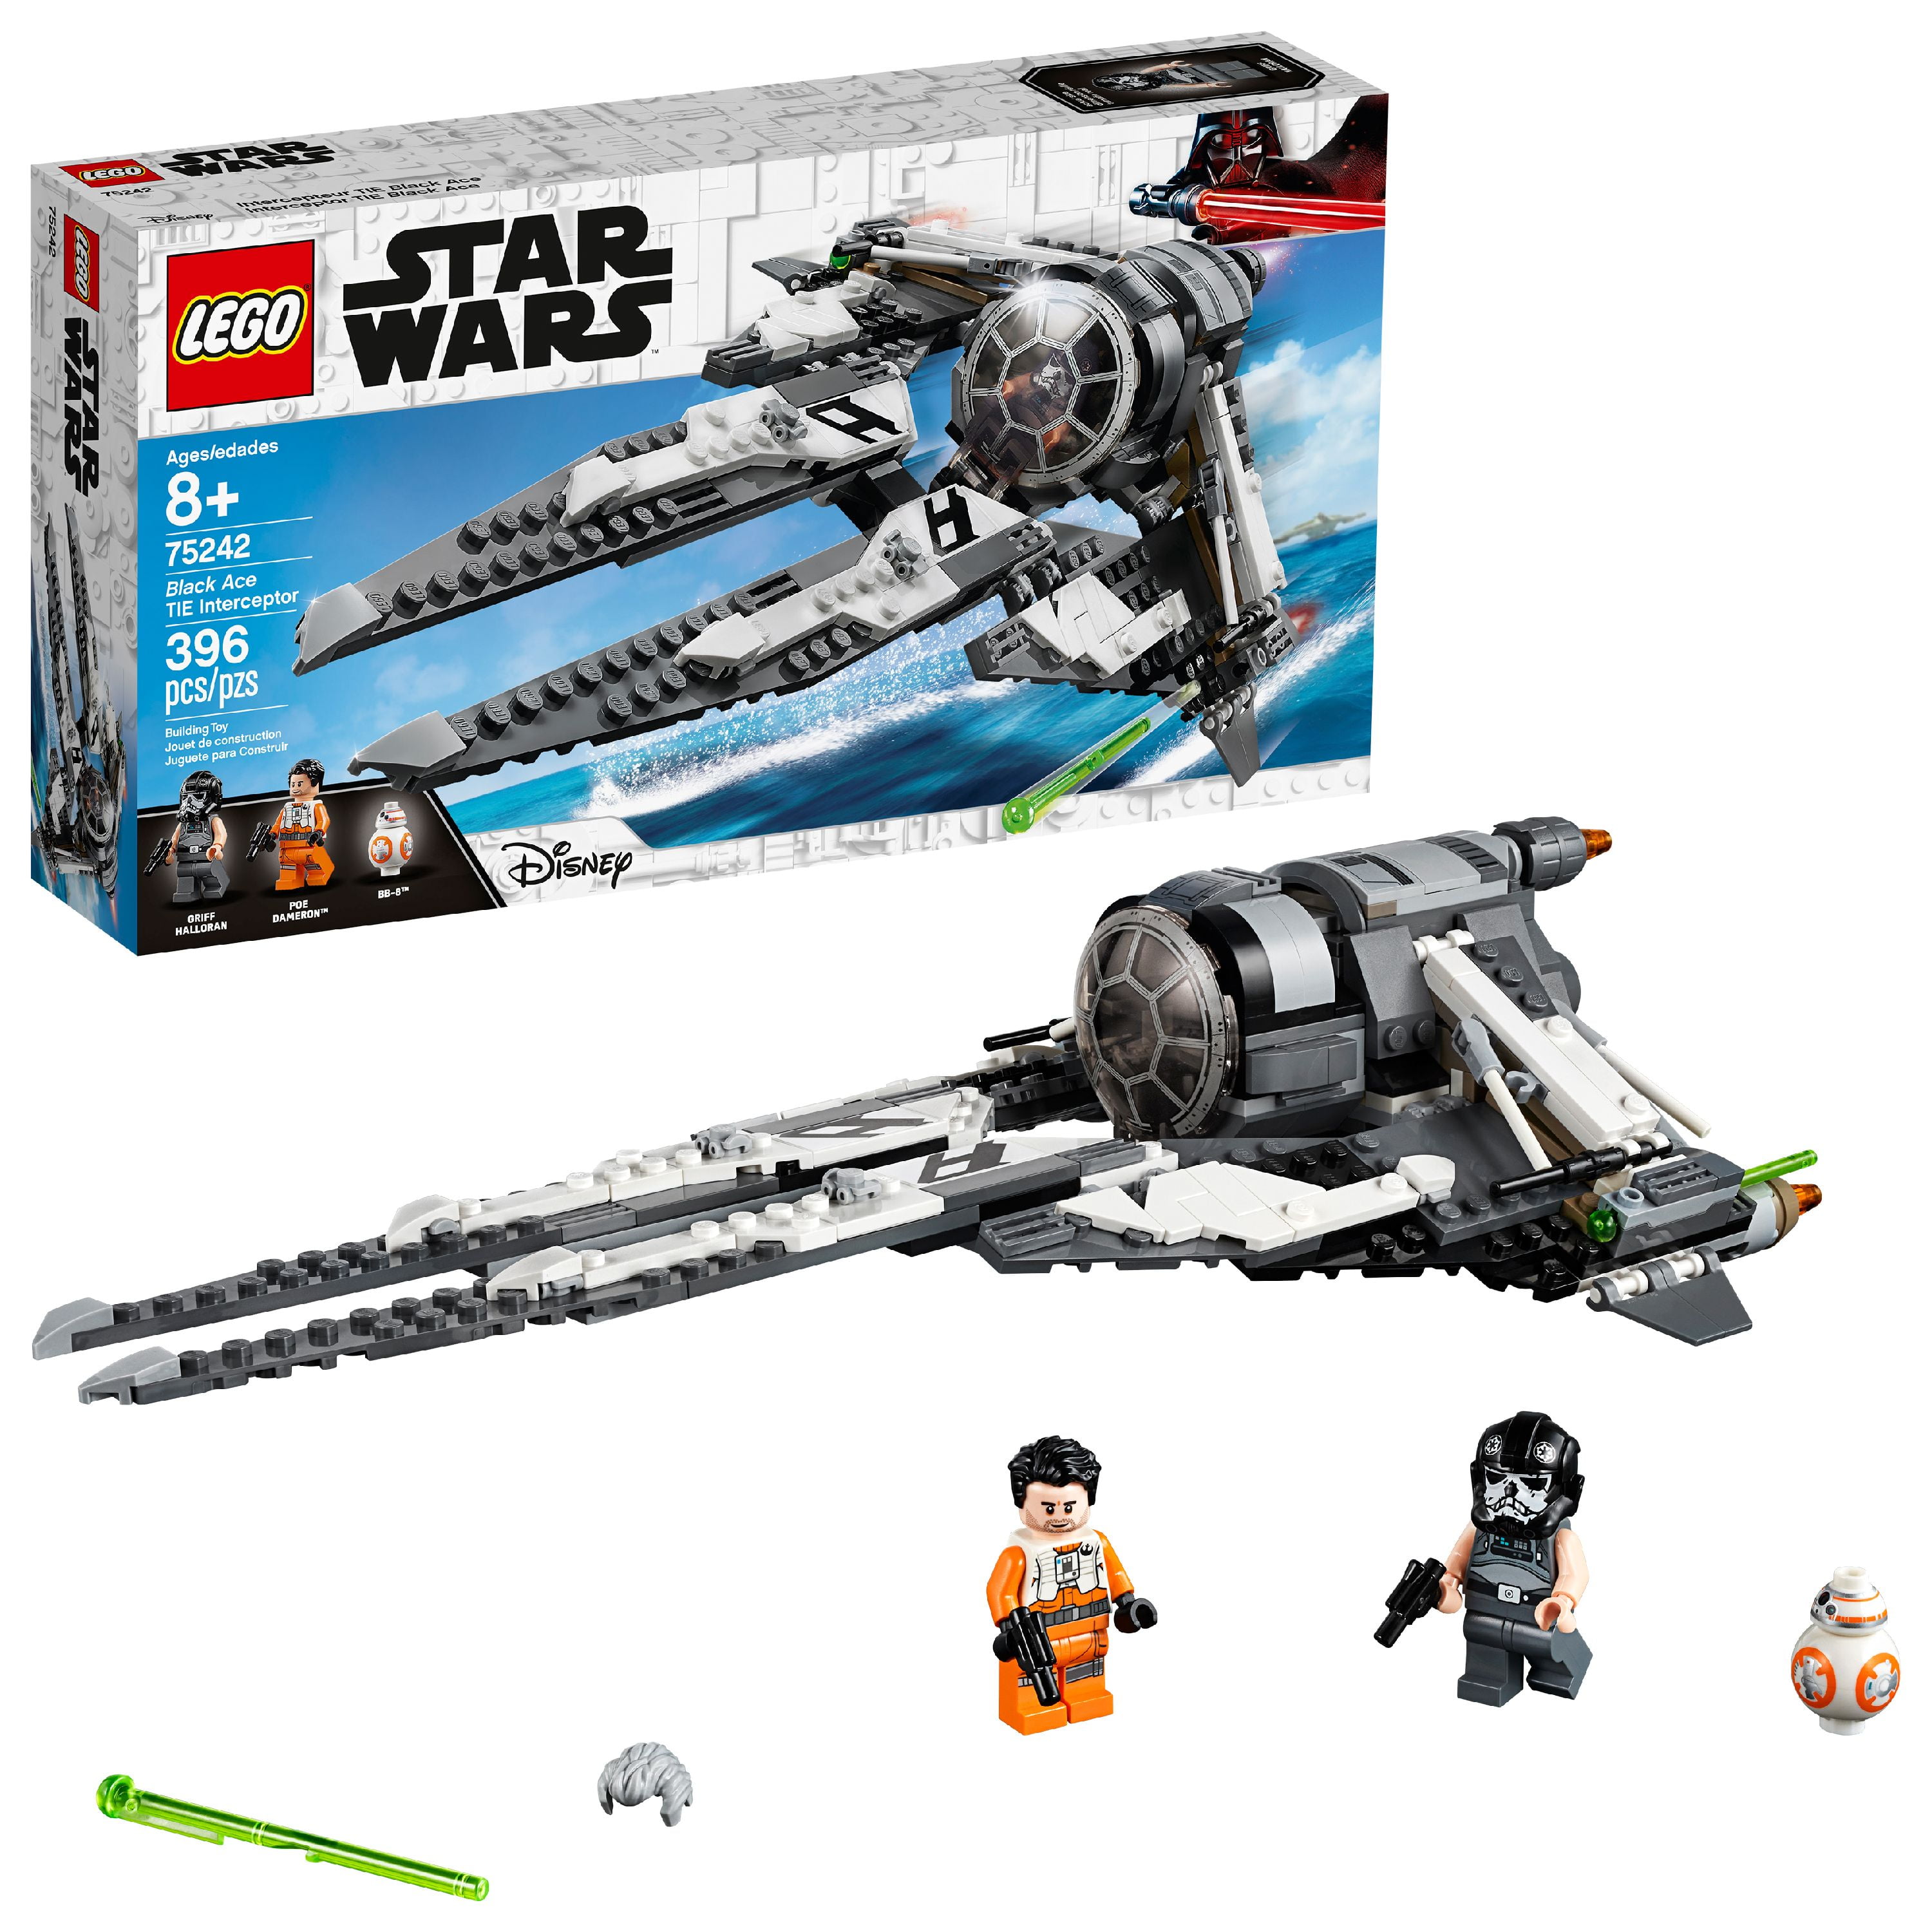 Lego Star Wars 75249 Resistance Y-Wing Starfighter ohne Minifiguren Brandneu 